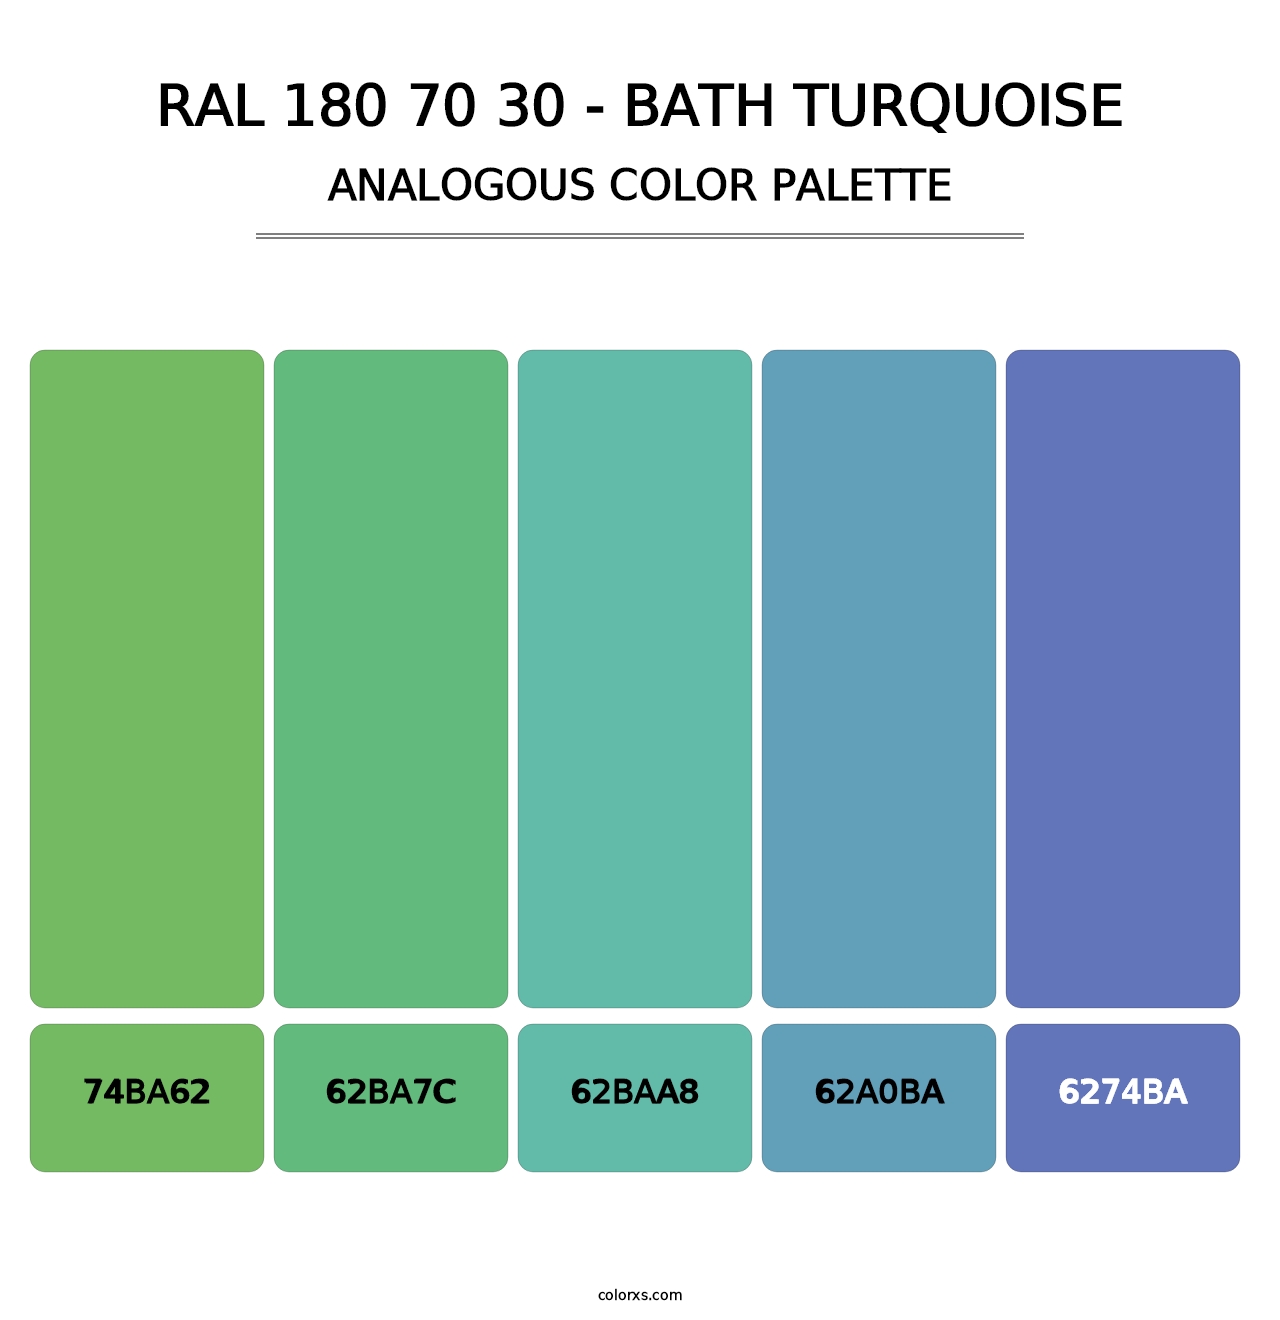 RAL 180 70 30 - Bath Turquoise - Analogous Color Palette